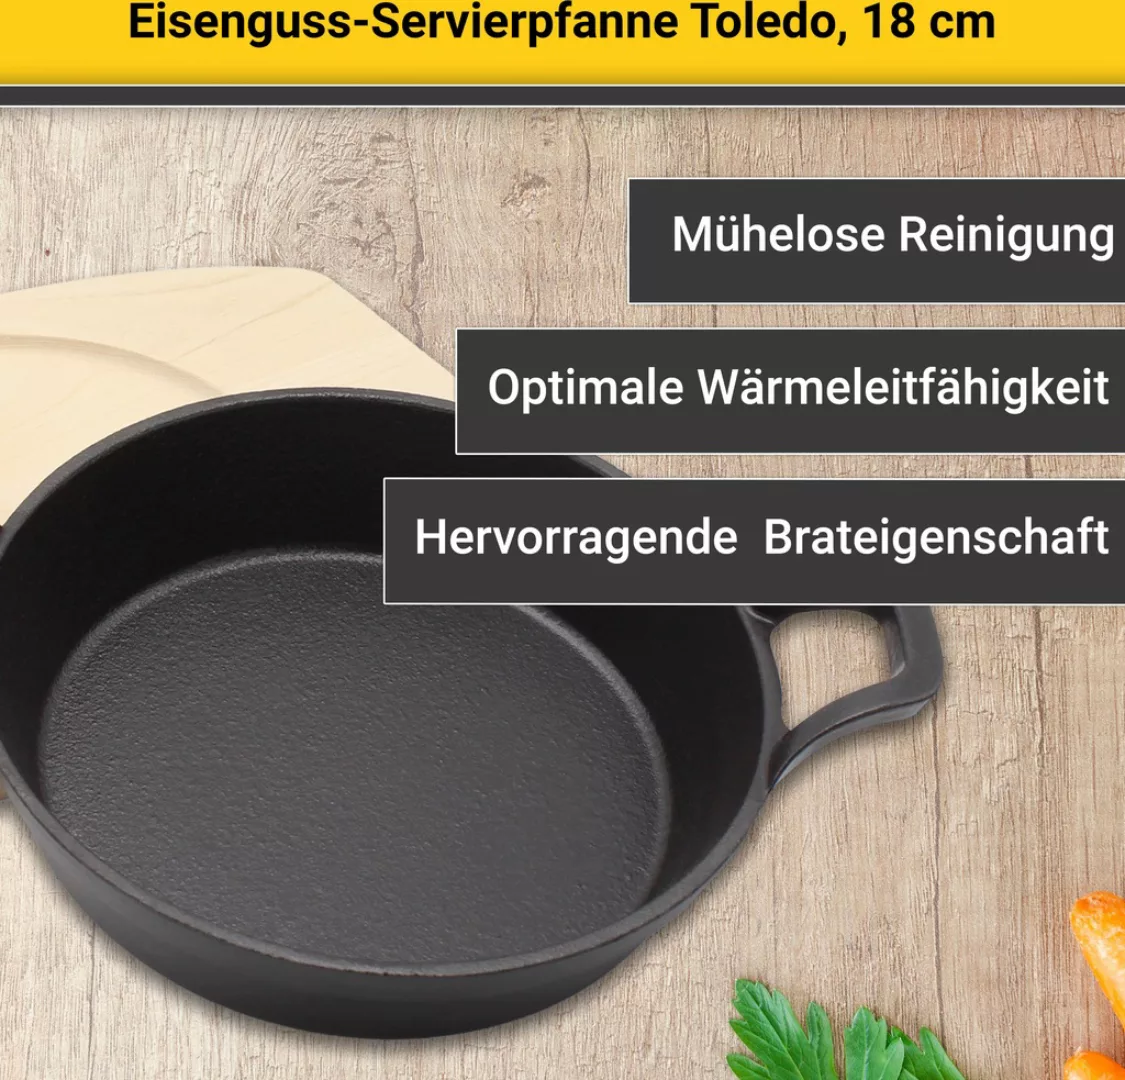 Krüger Servierpfanne »Eisenguss Brat- und Servierpfanne mit Holzteller TOLE günstig online kaufen